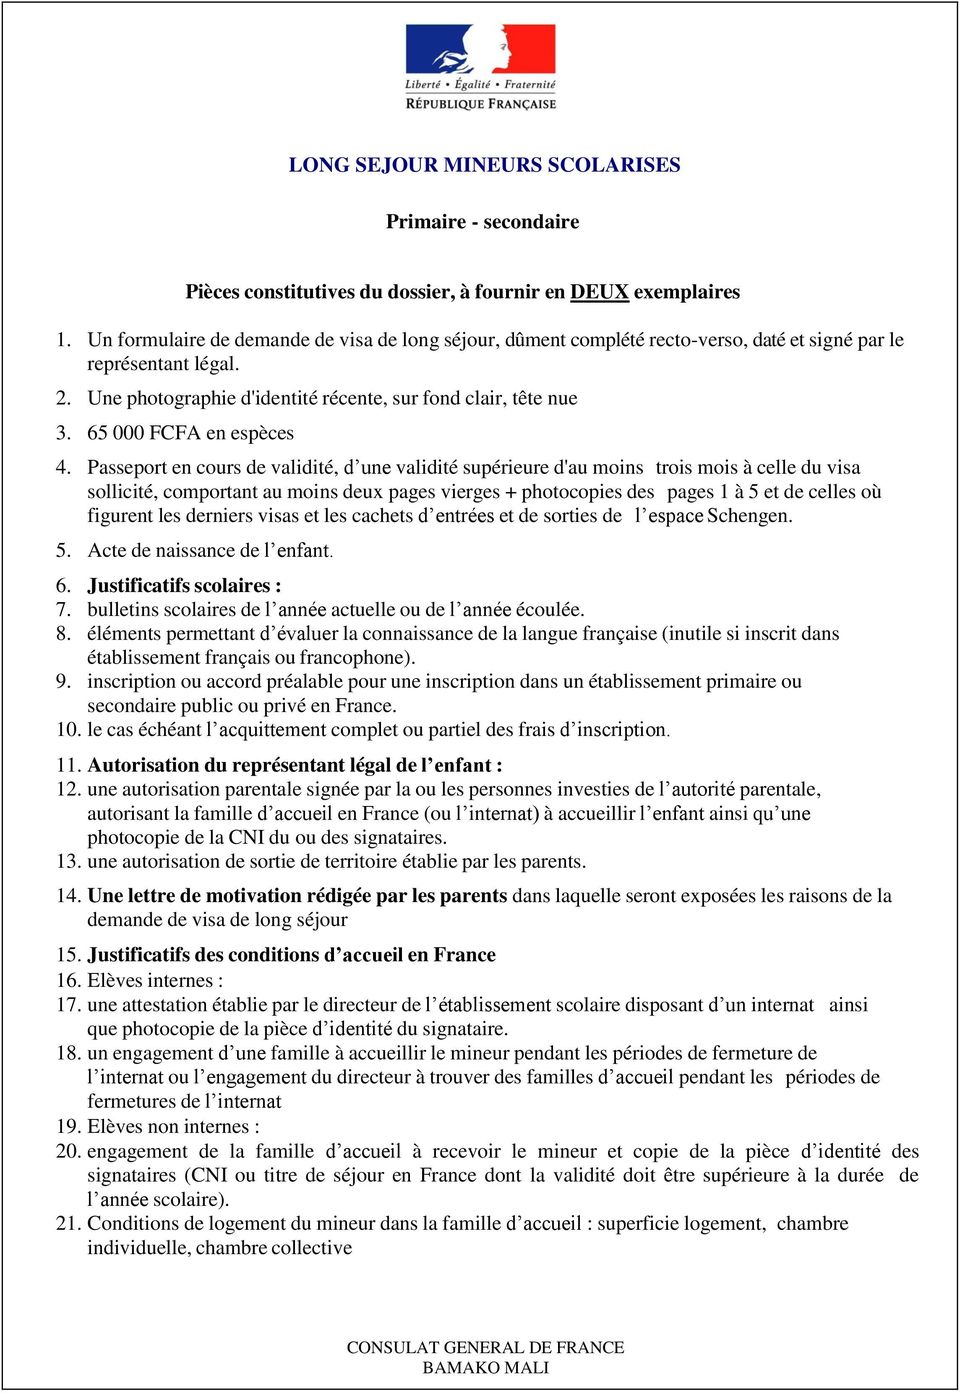 CONSTITUTION DES DOSSIERS DE DEMANDE DE VISA - PDF Téléchargement Gratuit